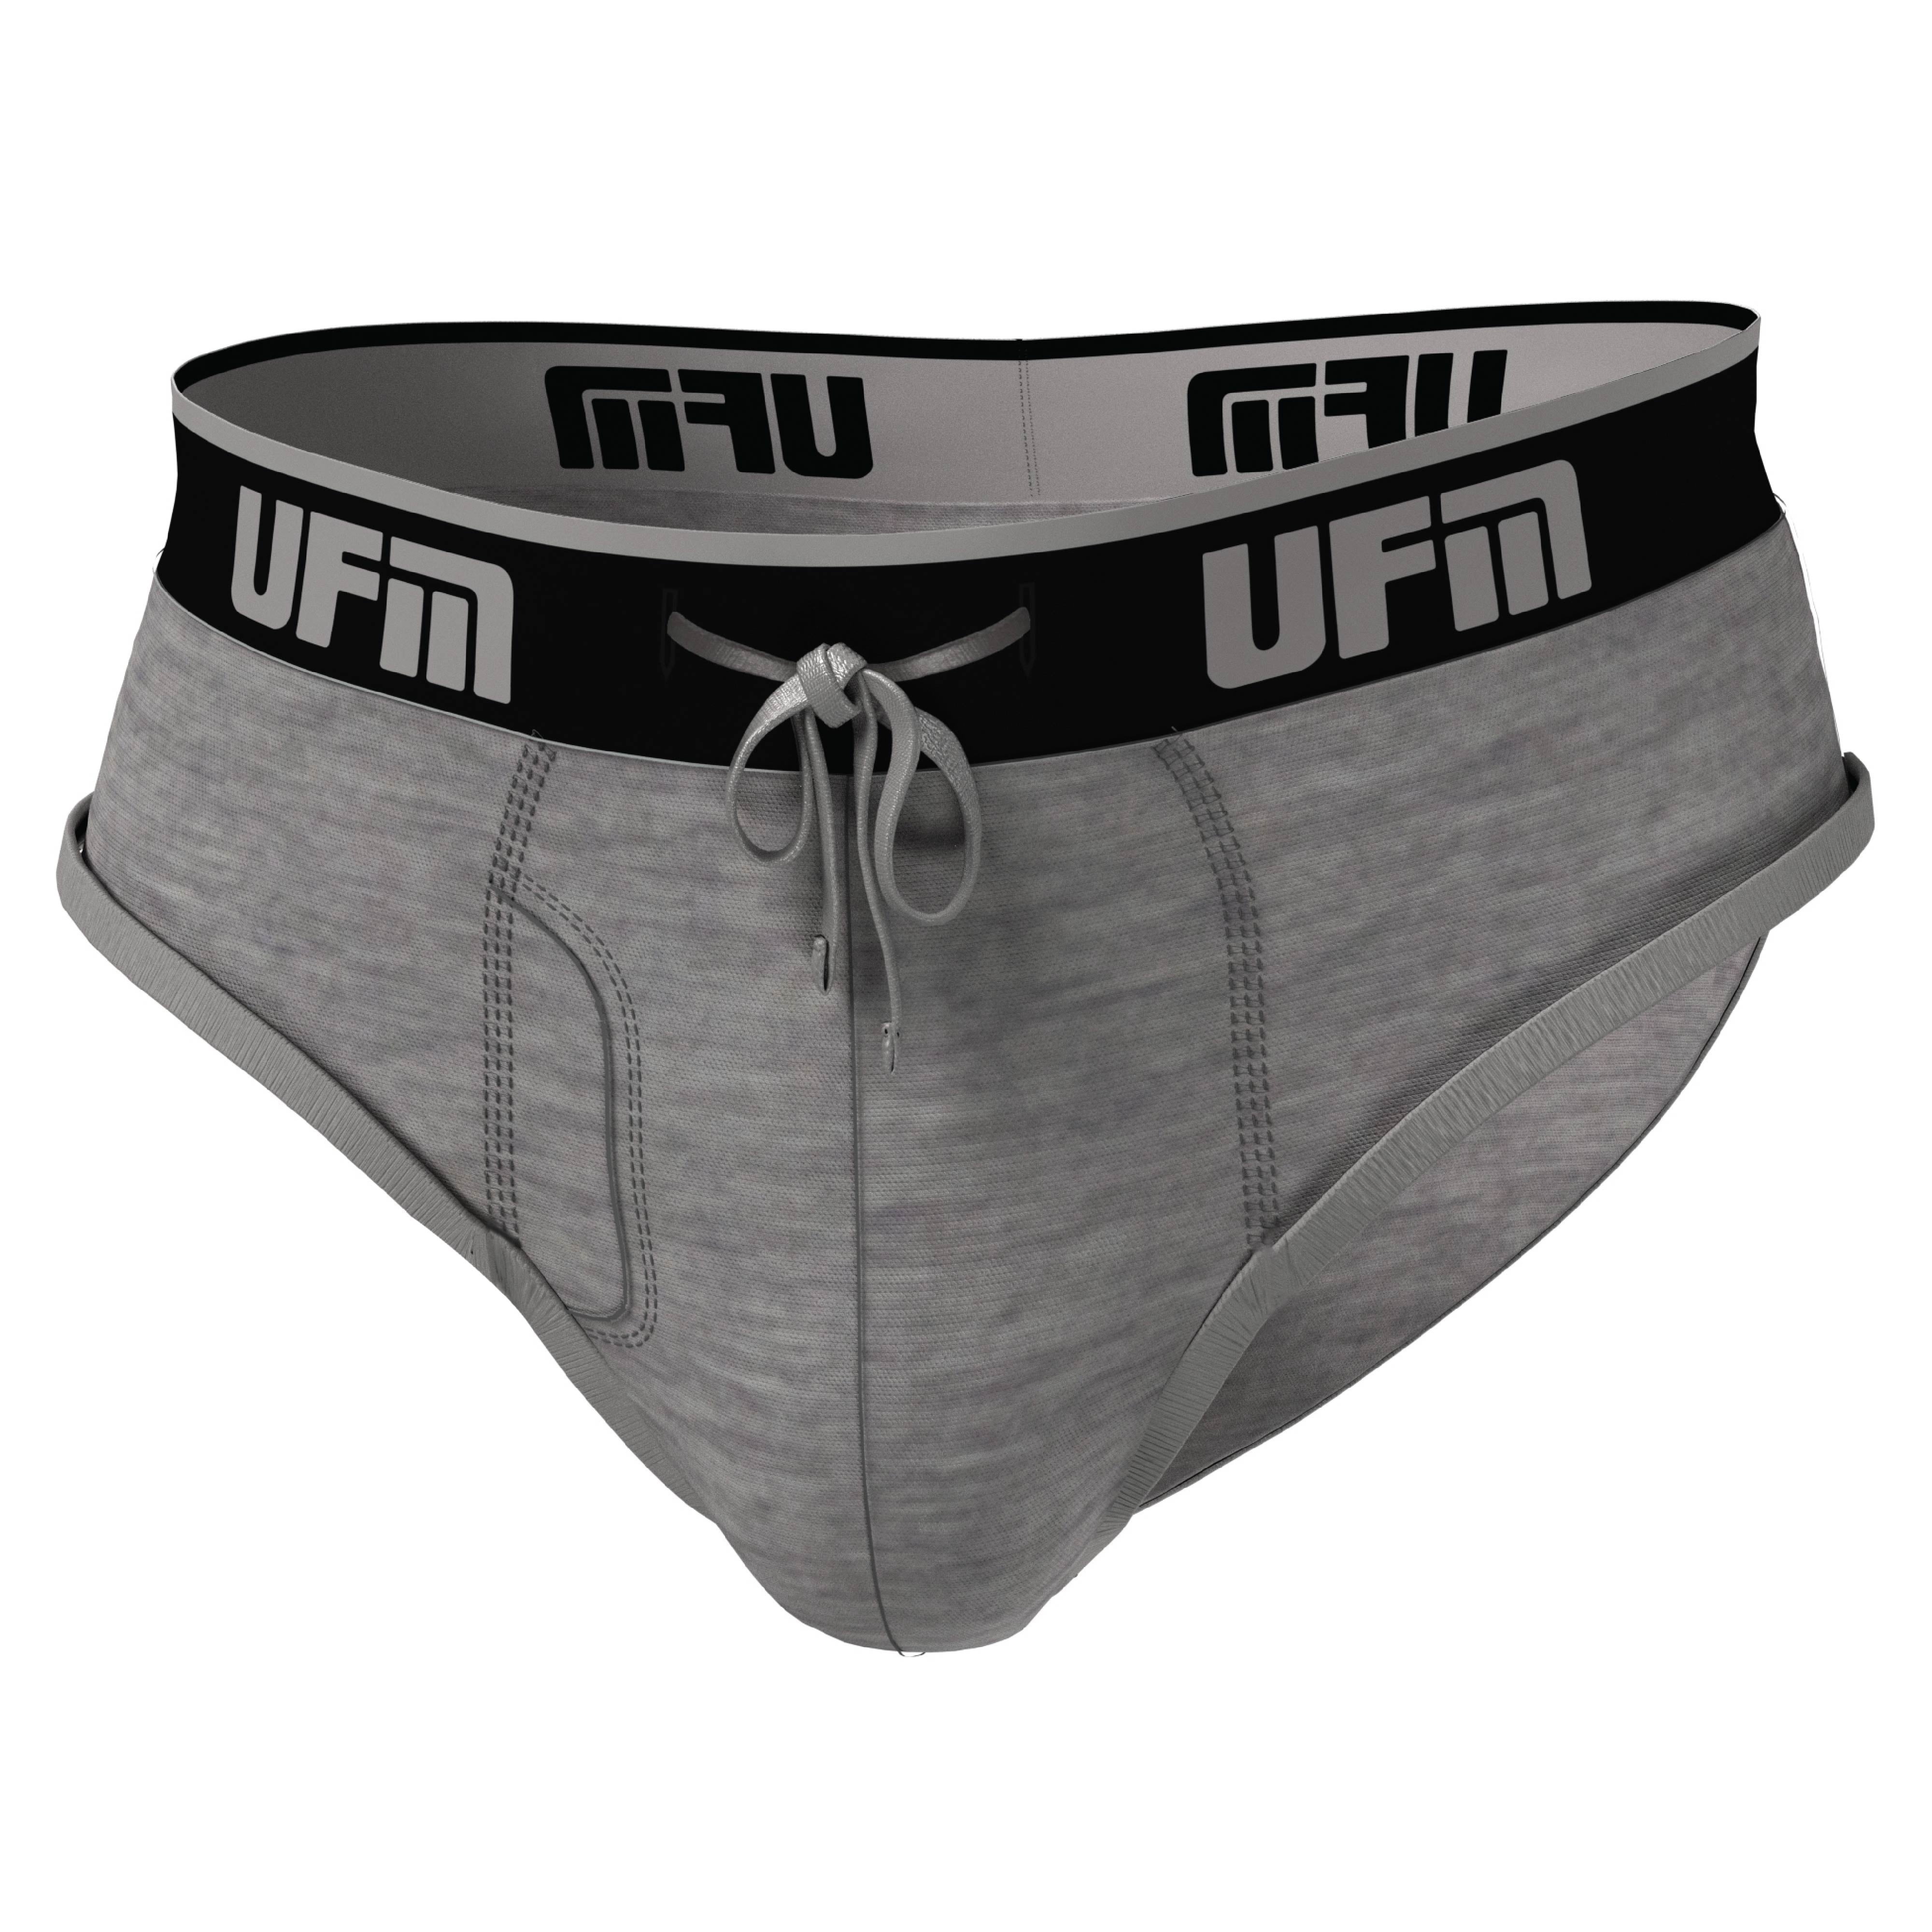 https://i5.walmartimages.com/seo/UFM-Mens-Underwear-Polyester-Spandex-Mens-Briefs-Regular-and-Adjustable-Support-Pouch-Men-Underwear-40-42-waist-Gray_147fca20-cb8a-4cdb-8373-3c3c9388015b.a70765d4a4db1e3537b91c08fd940bab.jpeg